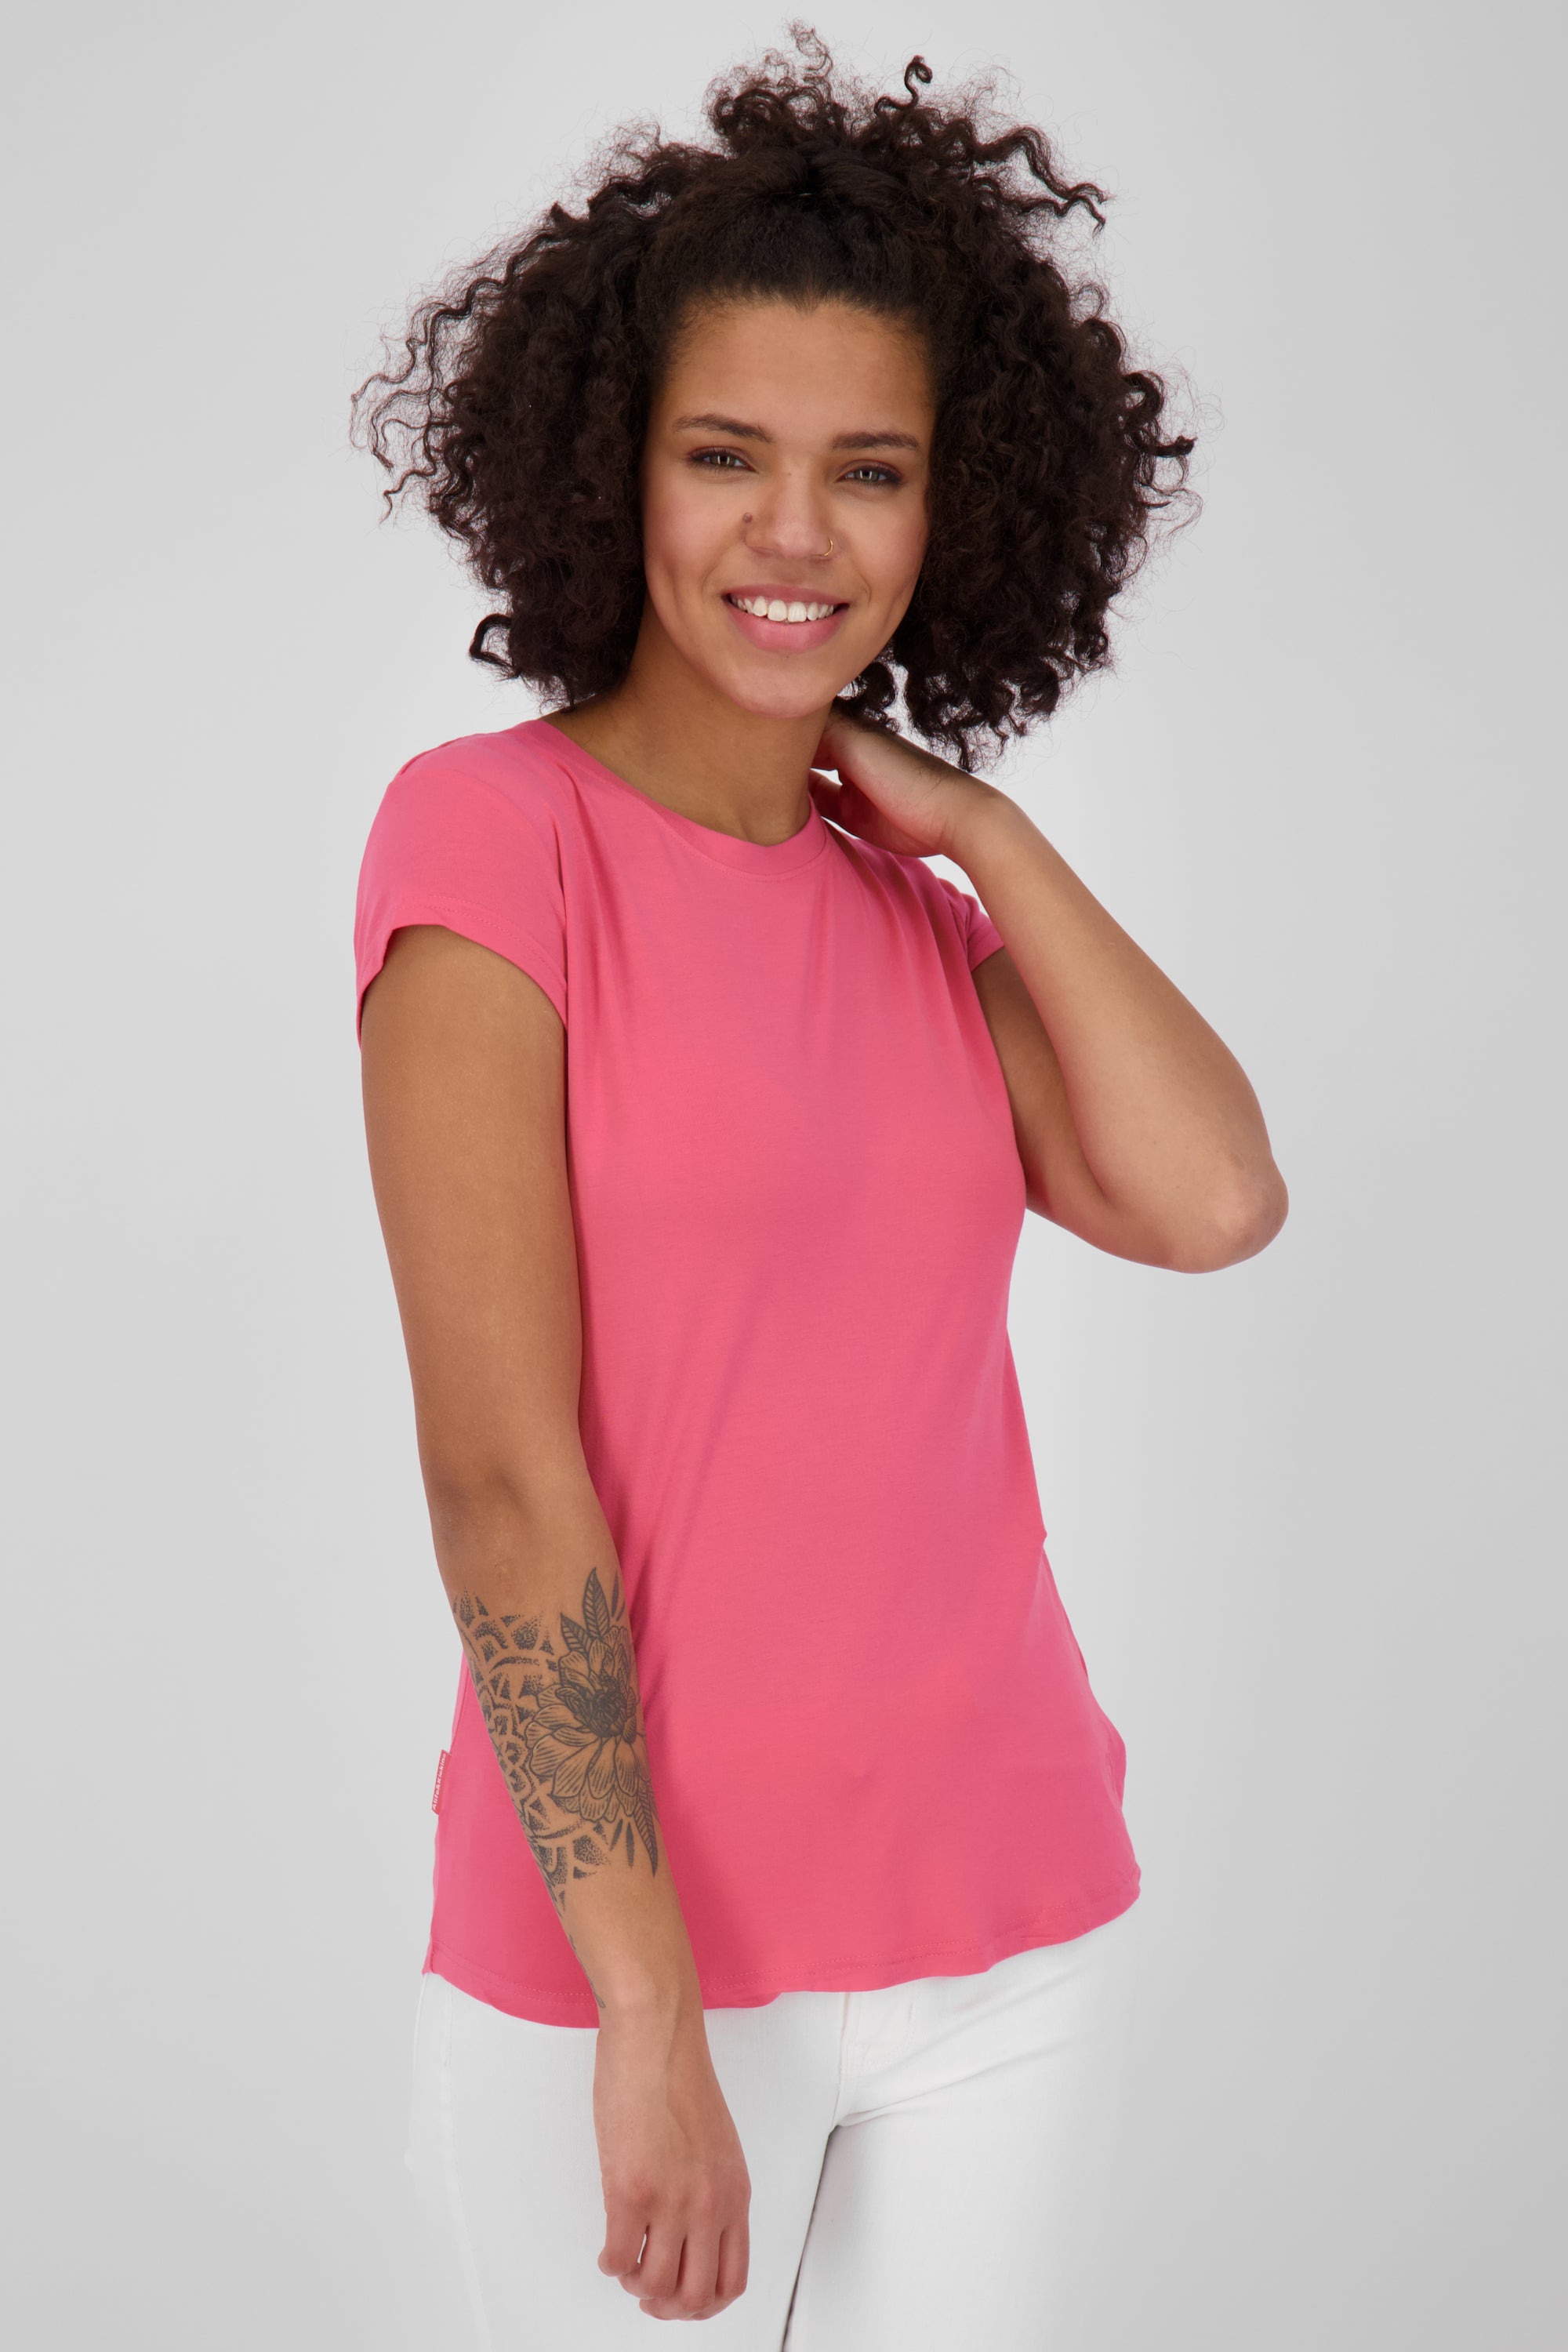 Vielseitiges Basic-Shirt für stylische Outfits: MimmyAK A von Alife and Kickin Pink